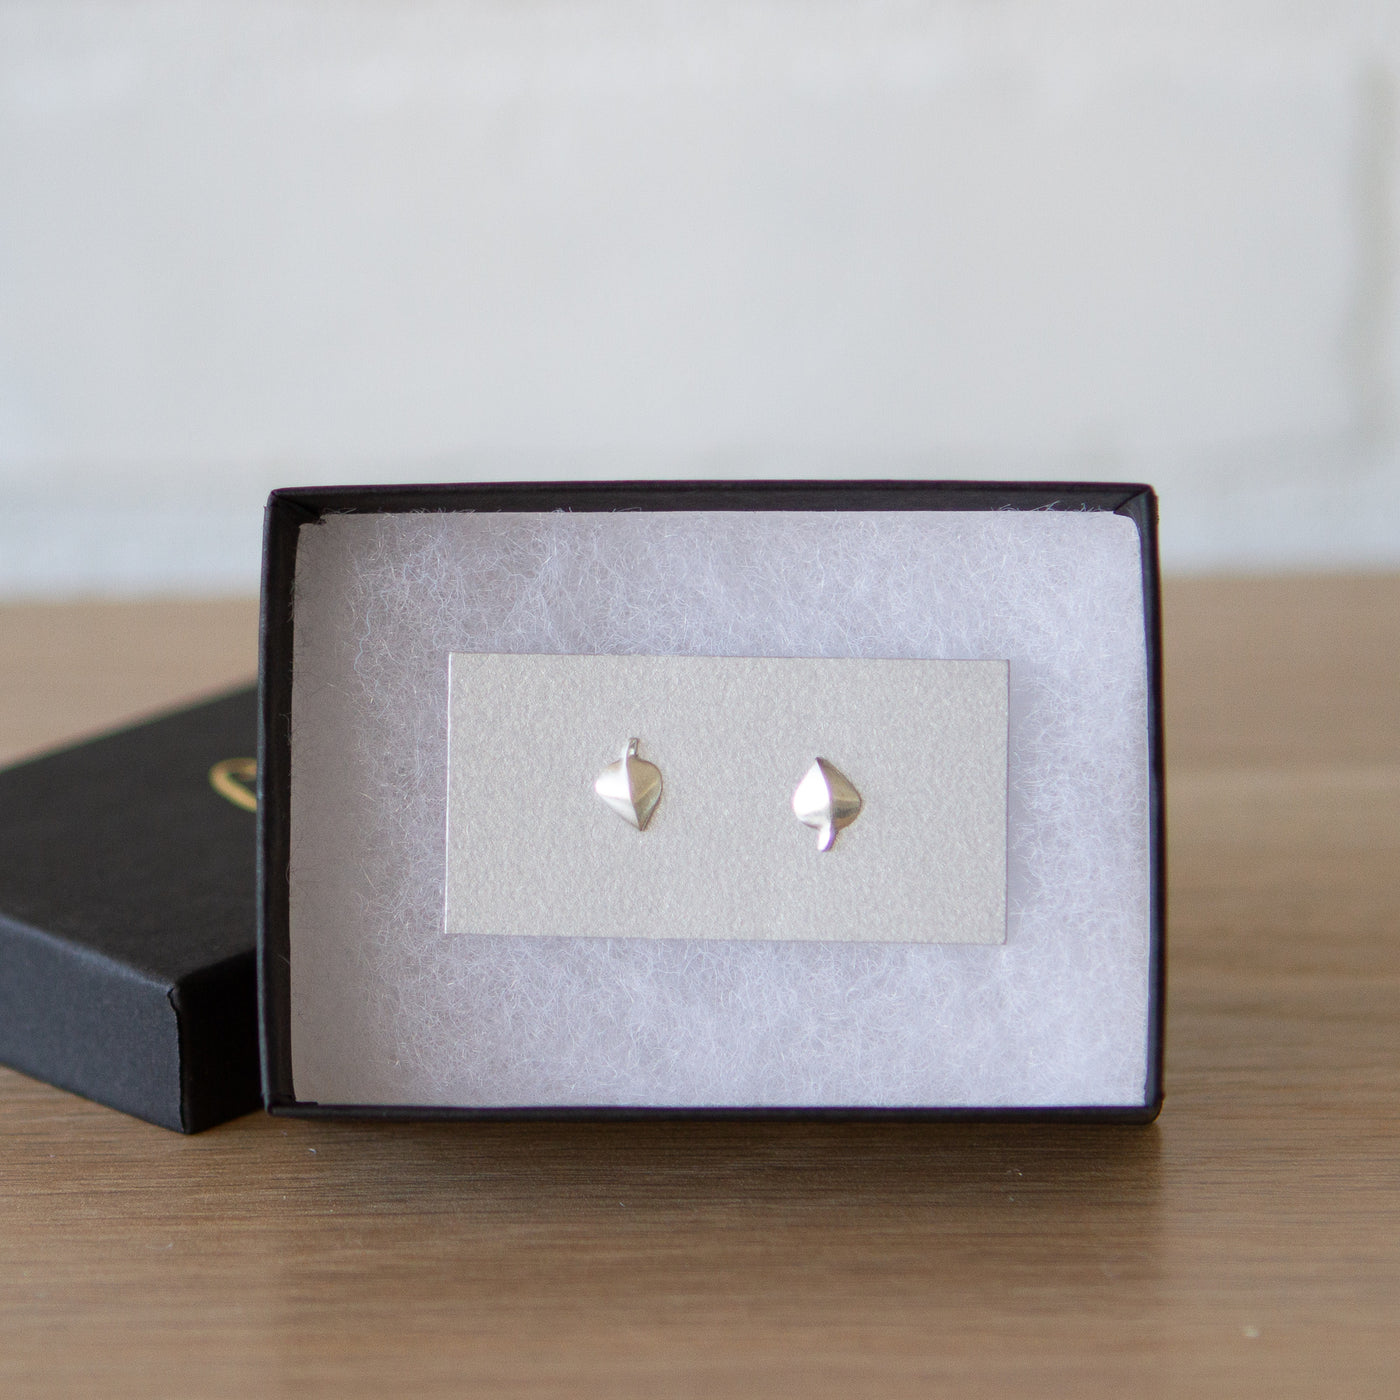 Silver Aspen Leaf Studs by Corey Egan in a gift box